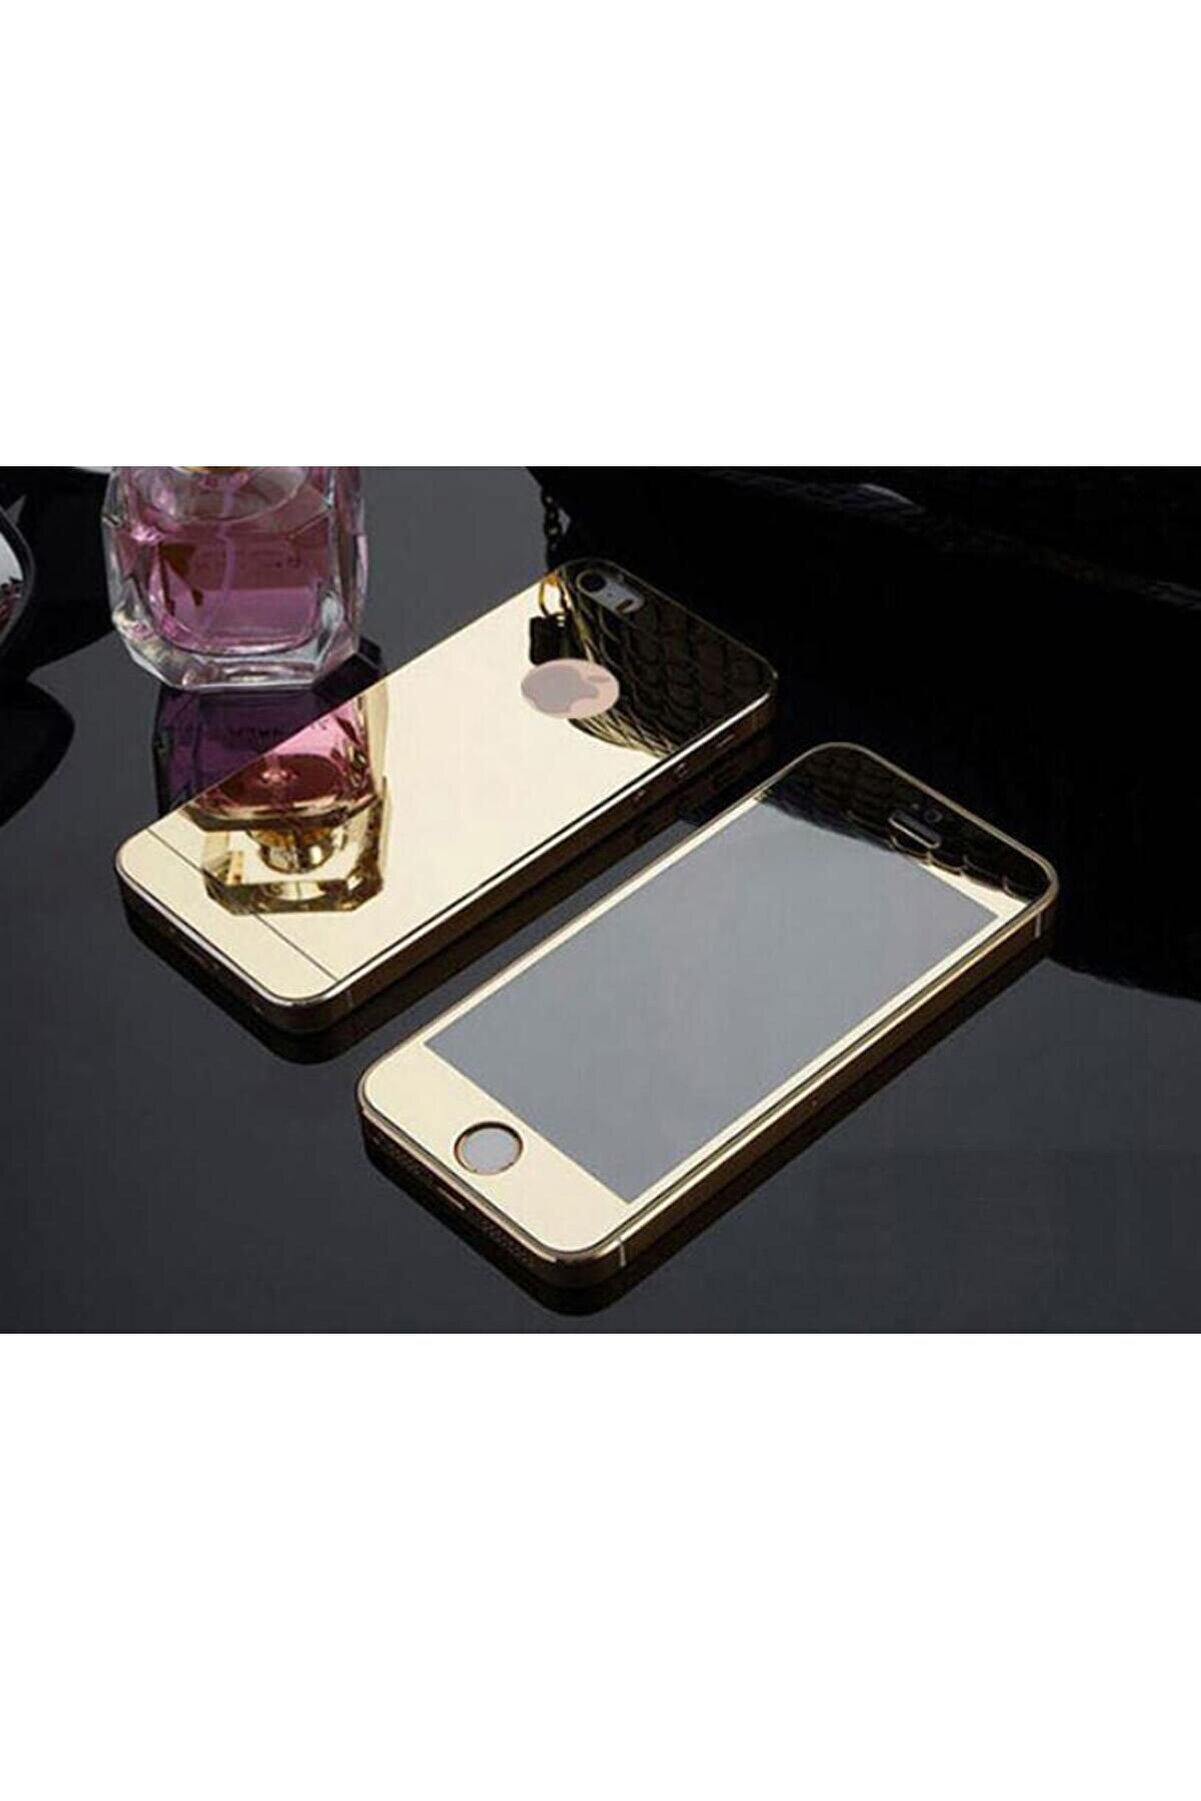 Remax Iphone 5 5s Için Ön/arka Mirror Aynalı Ekran Koruyucu Tamperli Cam Gold Renk